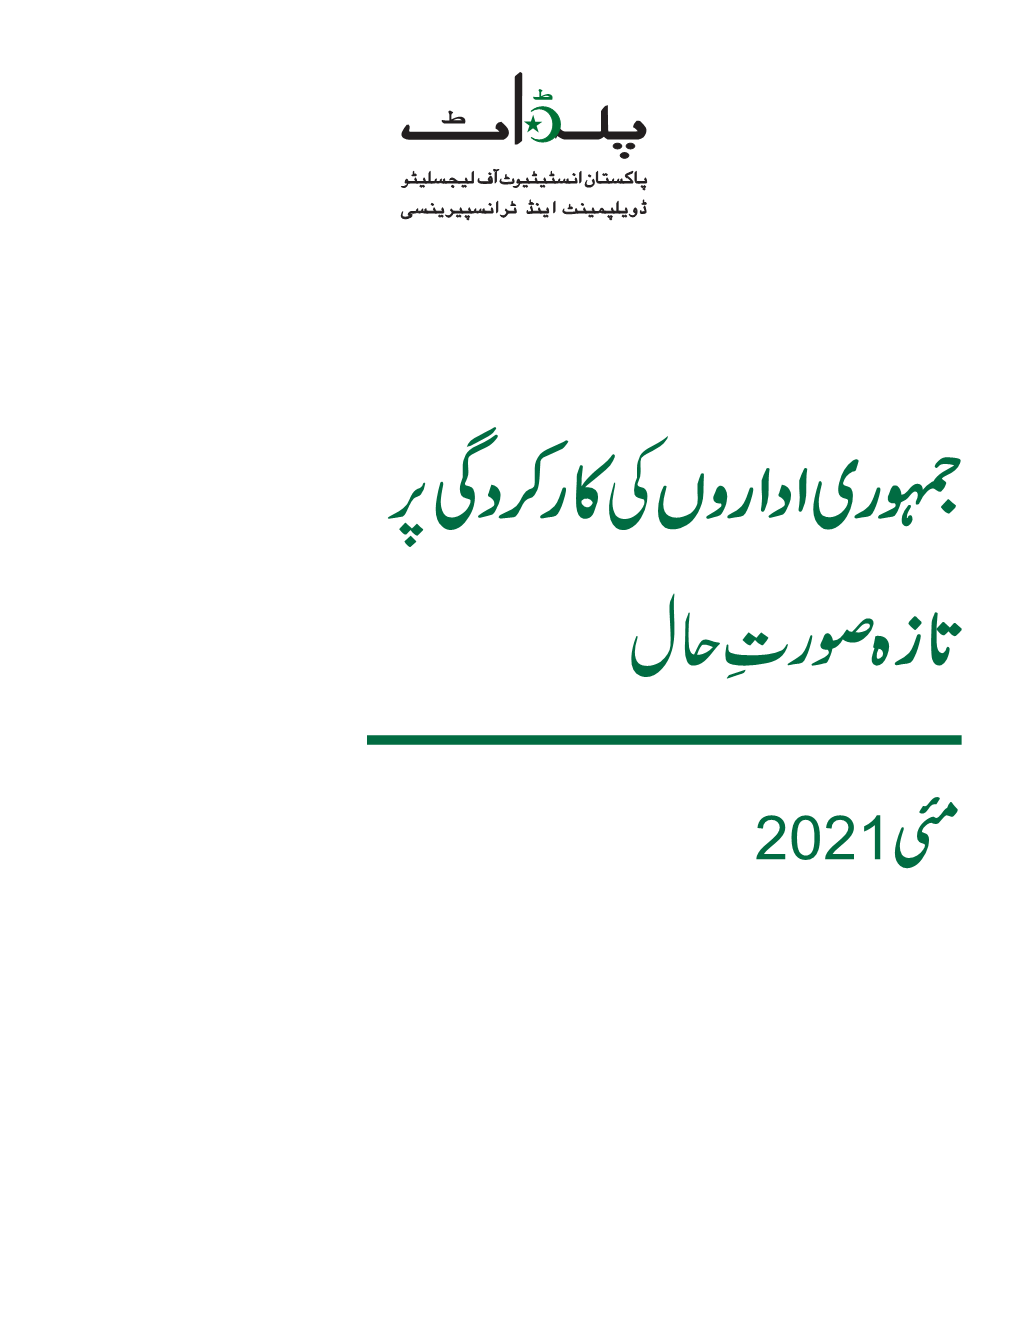 Urdu Update on PDI-May 2021.Cdr